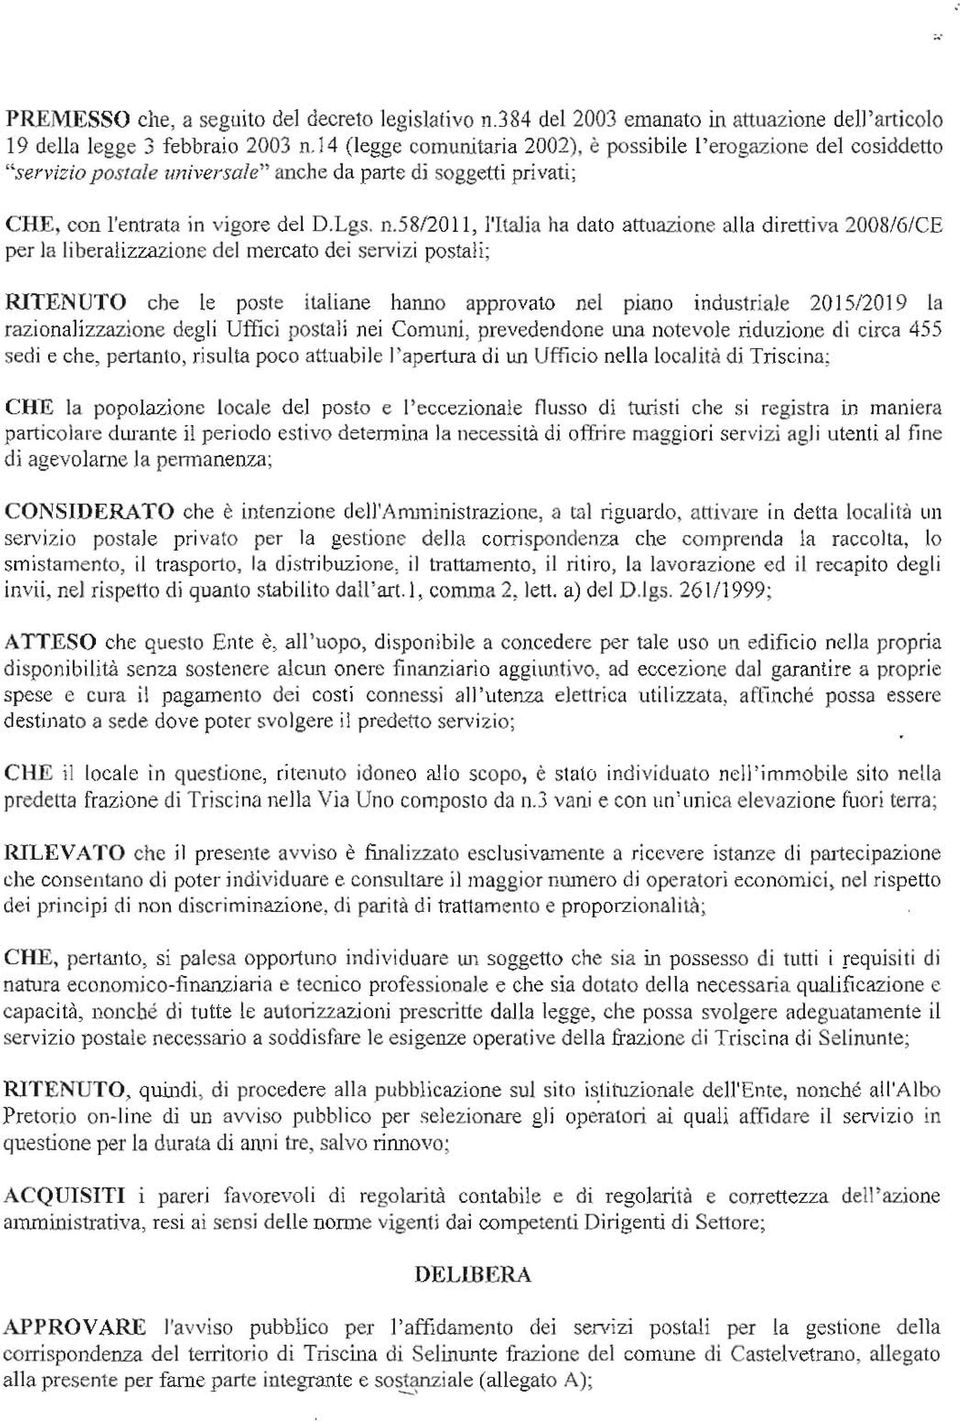 5812011, lttalia ha dato attuazione al la direttiva 2008/6/CE per la liberalizzazione del mercato dei servizi postali; RITENUTO che le poste italiane hanno approvato nel piano industriale 2015120 19